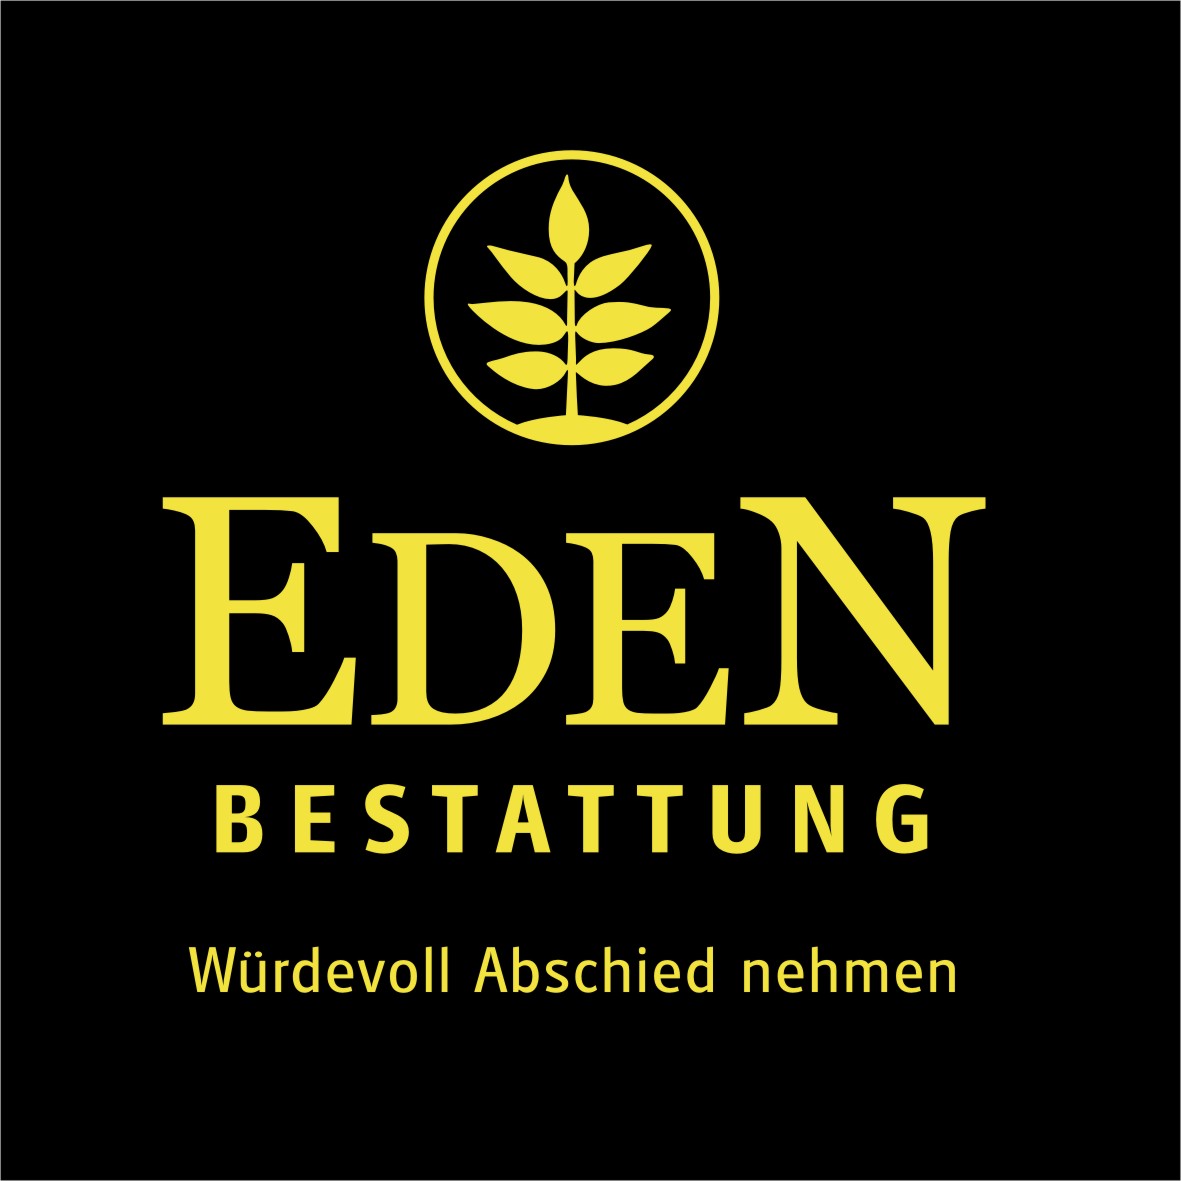 Bestattung Eden St. Ruprecht Logo